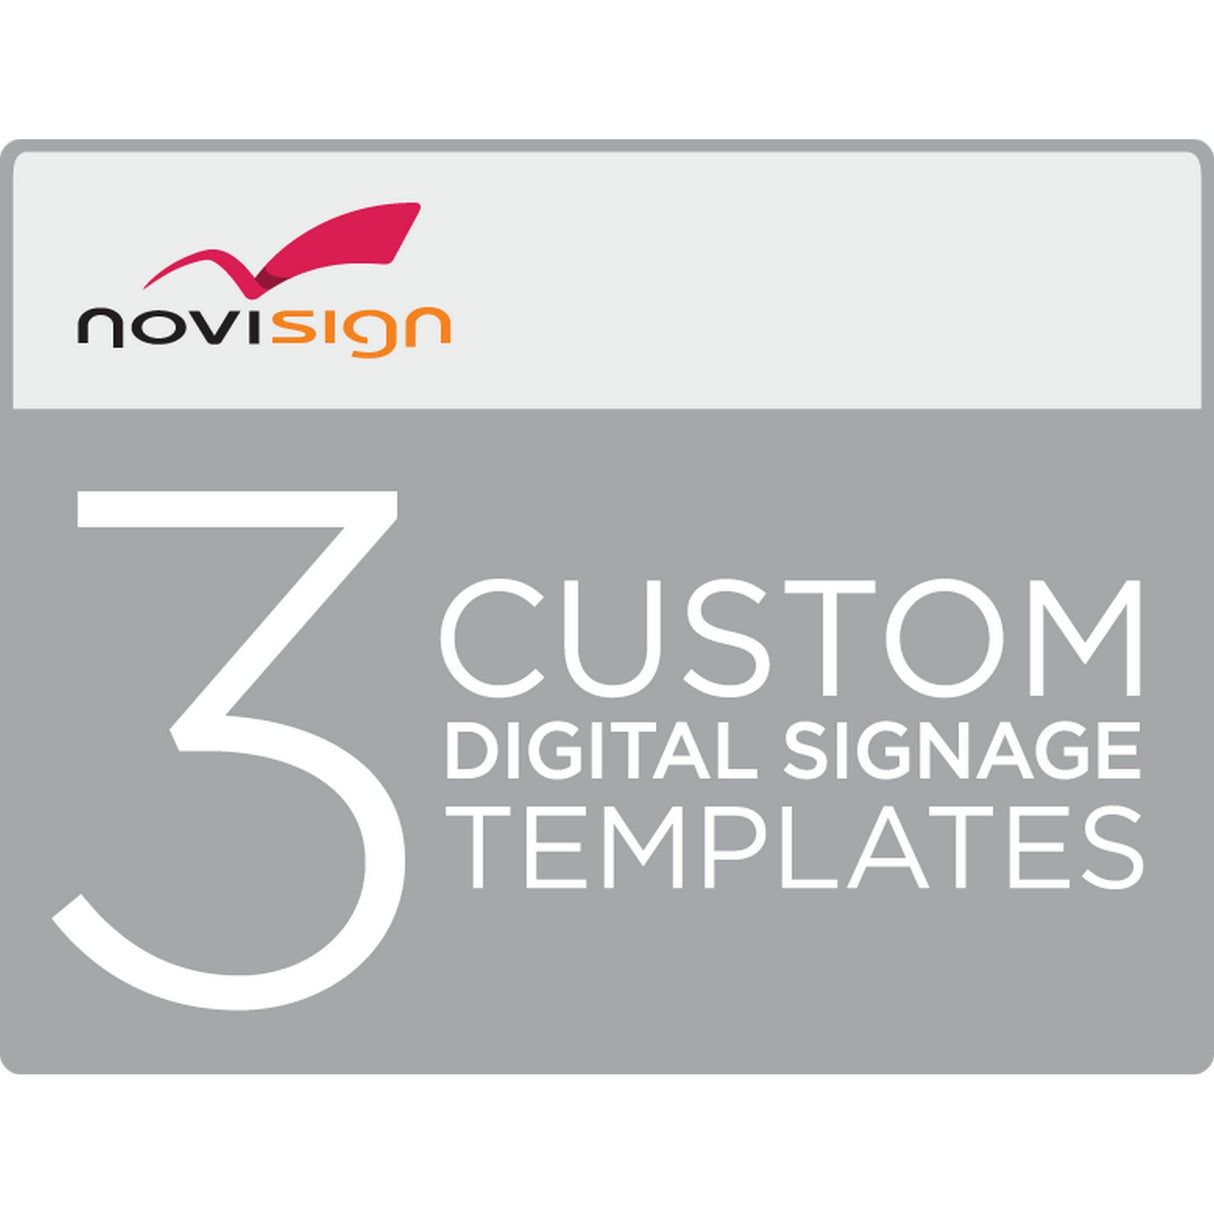 NoviSign 3 Customized Digital Signage Templates